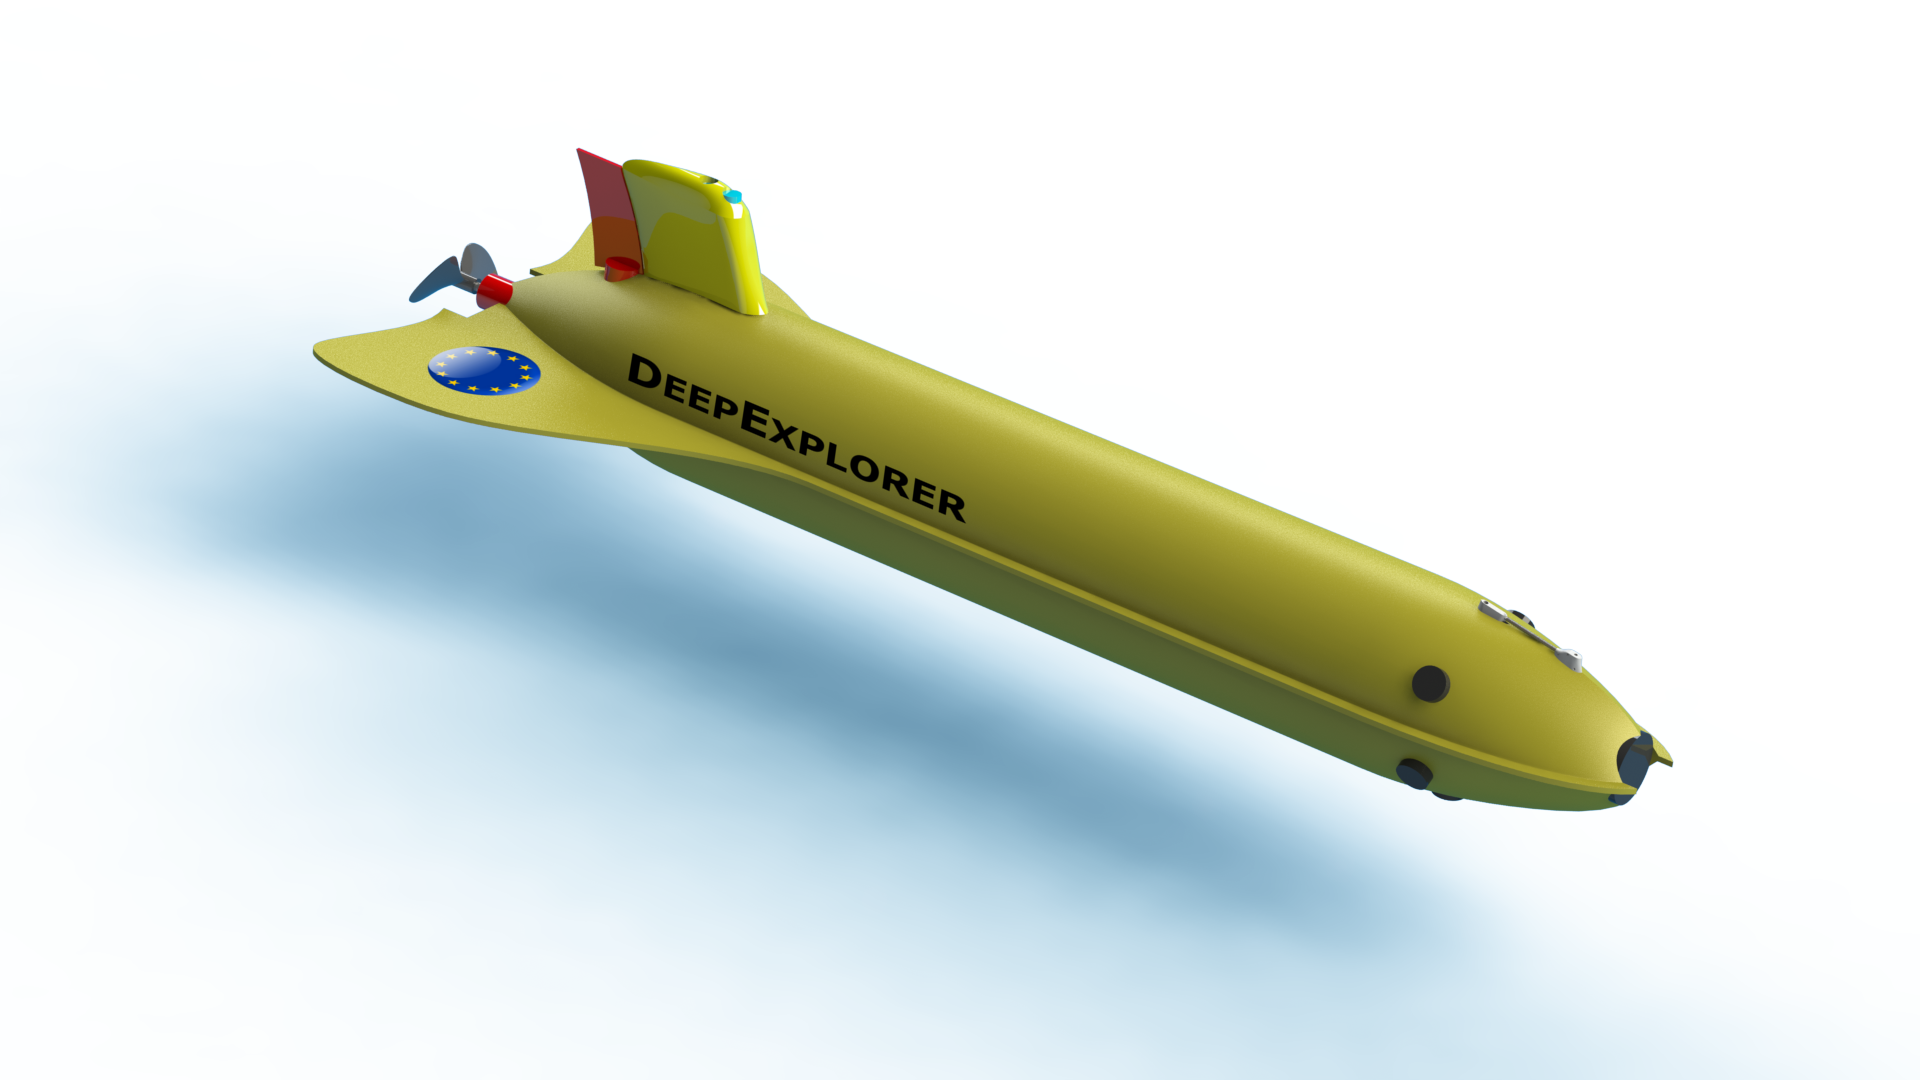 The future shape of dep sea exploration